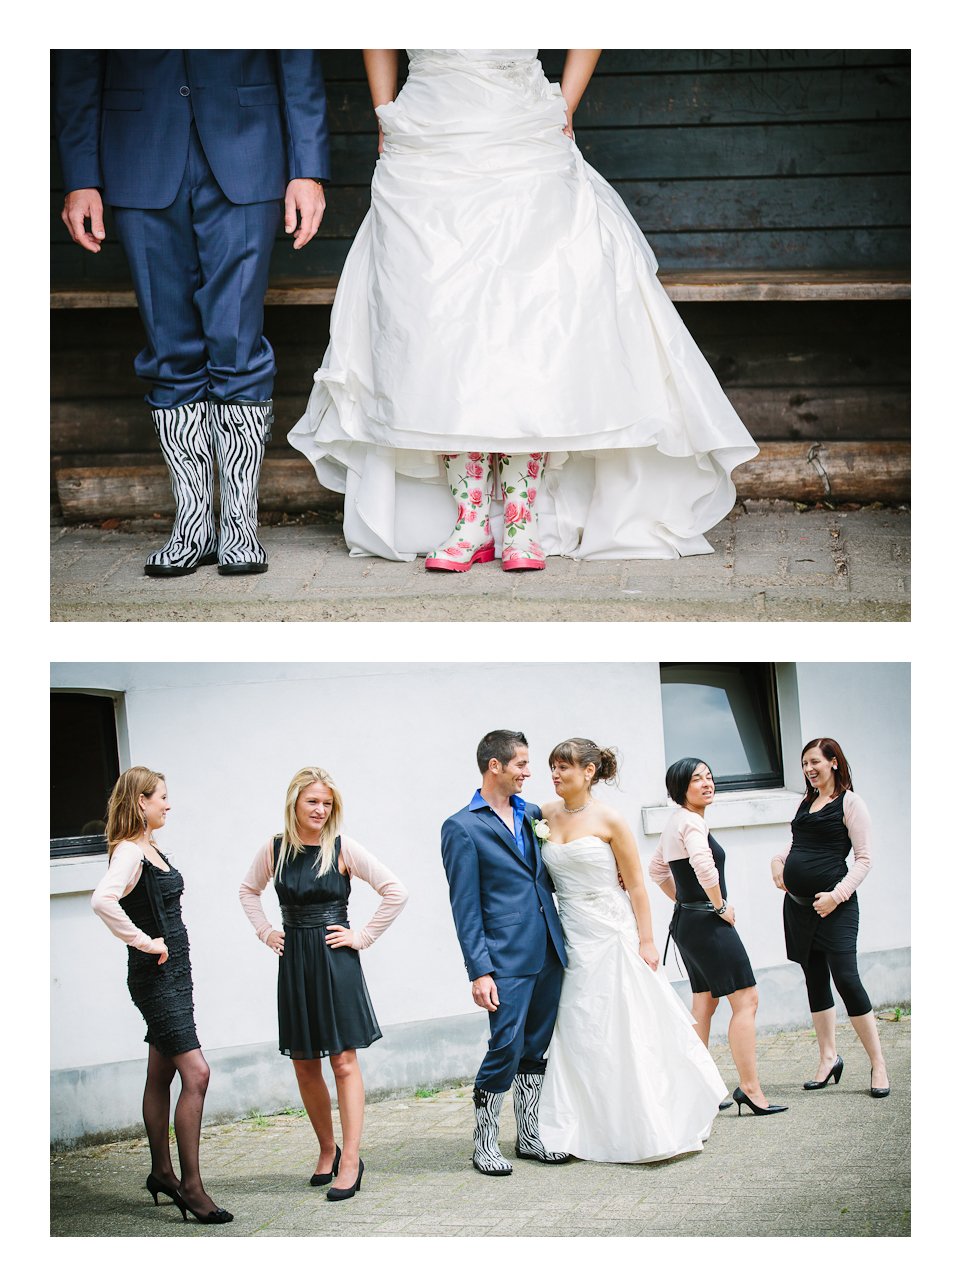 bruidsreportage-bruidsfotograaf-trouwfotograaf-belgië